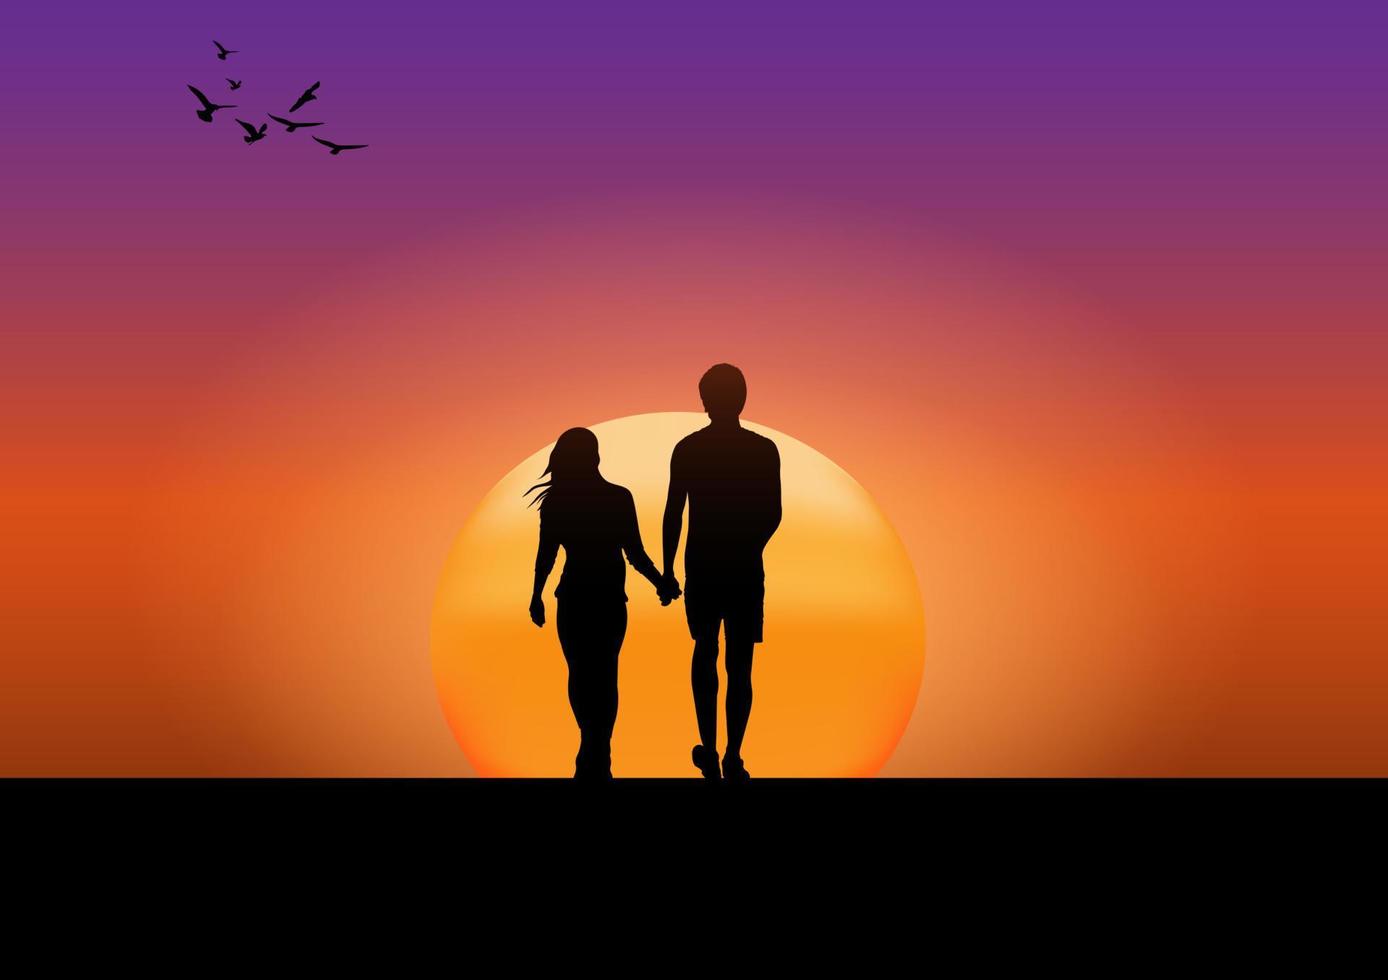 desenho gráfico casal menino e menina ficam para olhar o pôr do sol com silhueta clara laranja e azul do céu ilustração vetorial conceito romântico vetor